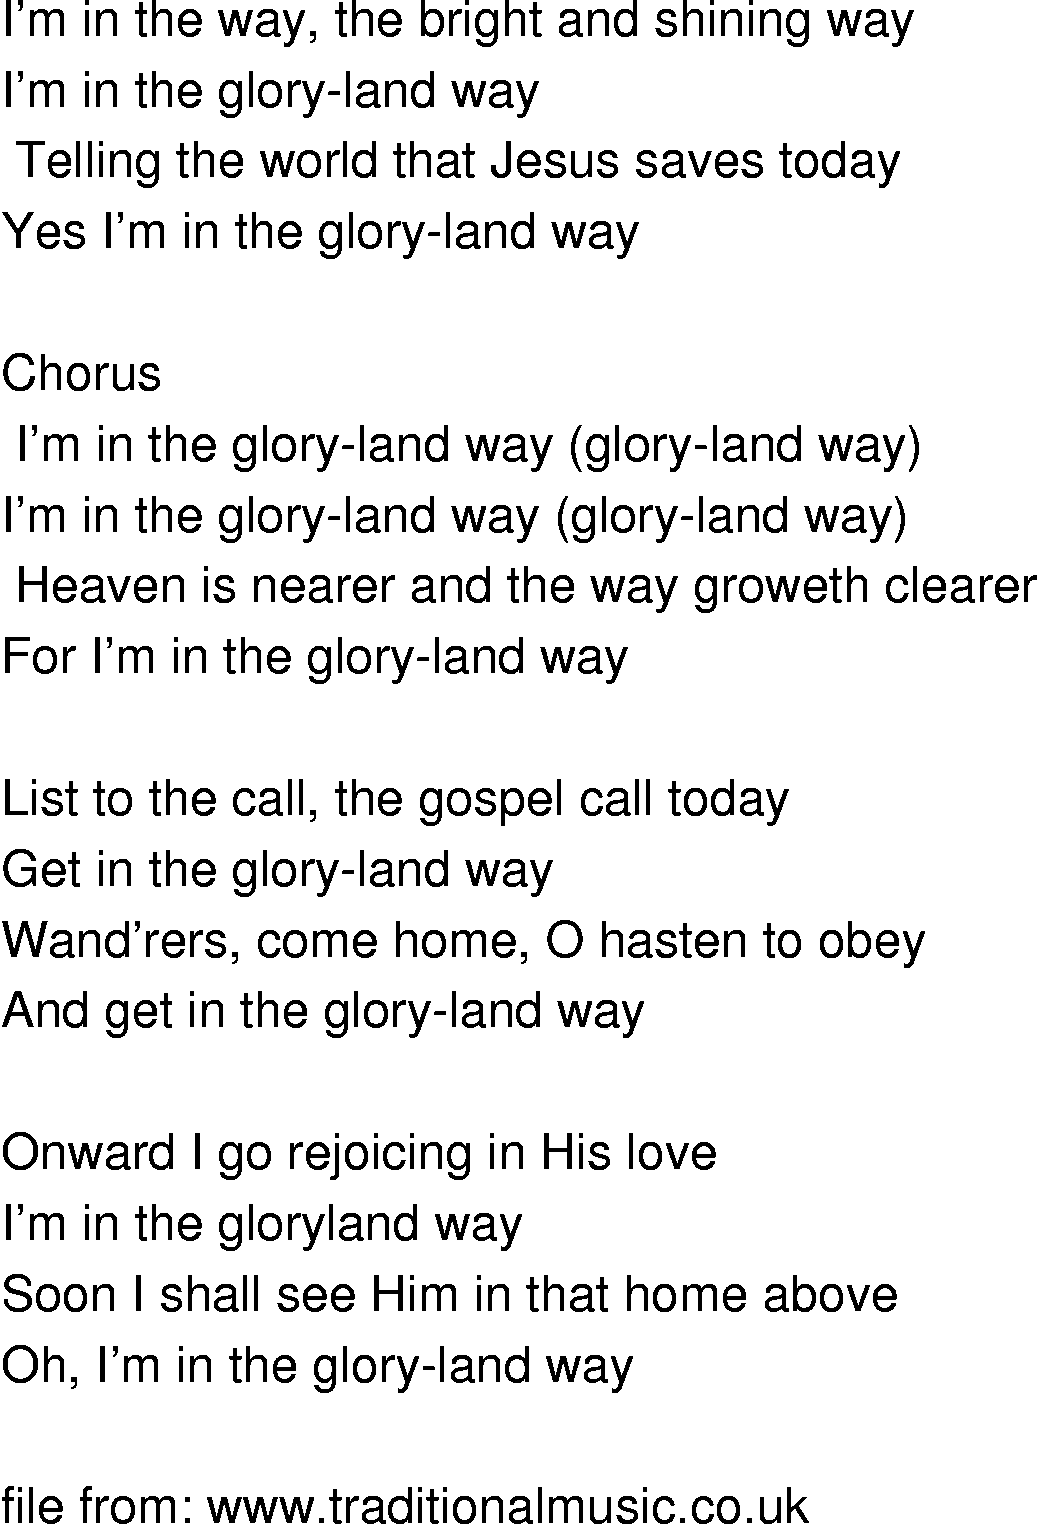 Old-Time (oldtimey) Song Lyrics - glory land way